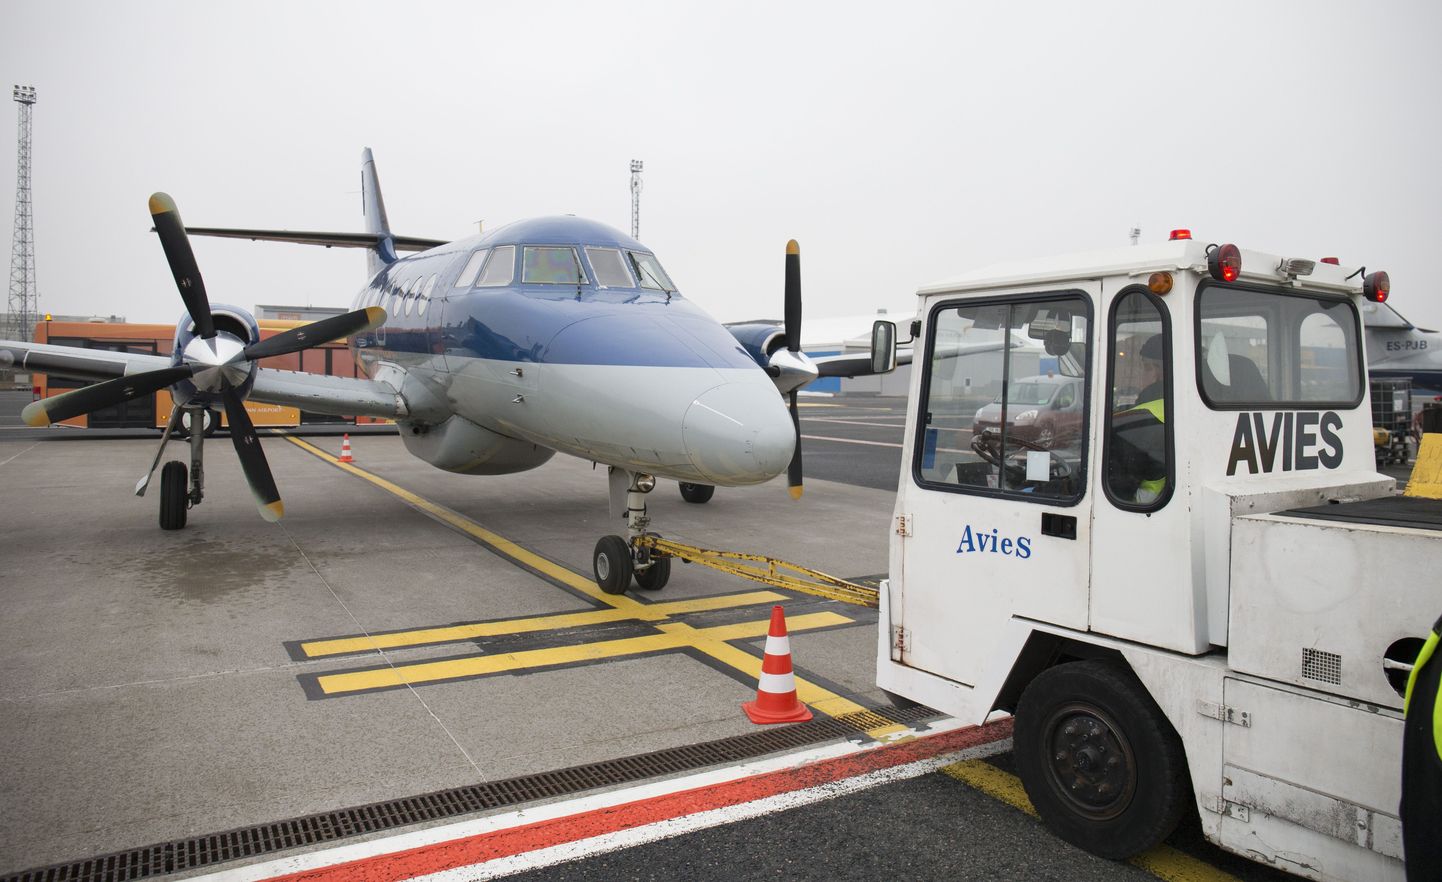 Kuigi lennuamet otsustas reedel peatada pankrotis kodumaise lennufirma Aviesi tegevusloa vähemalt kuueks kuuks, tuli otsus ettevõtte juhtidele üllatusena ja see plaanitakse vaidlustada. Raskustesse sattunud Avies lendas Eestis pealinna ja suursaarte vahel.